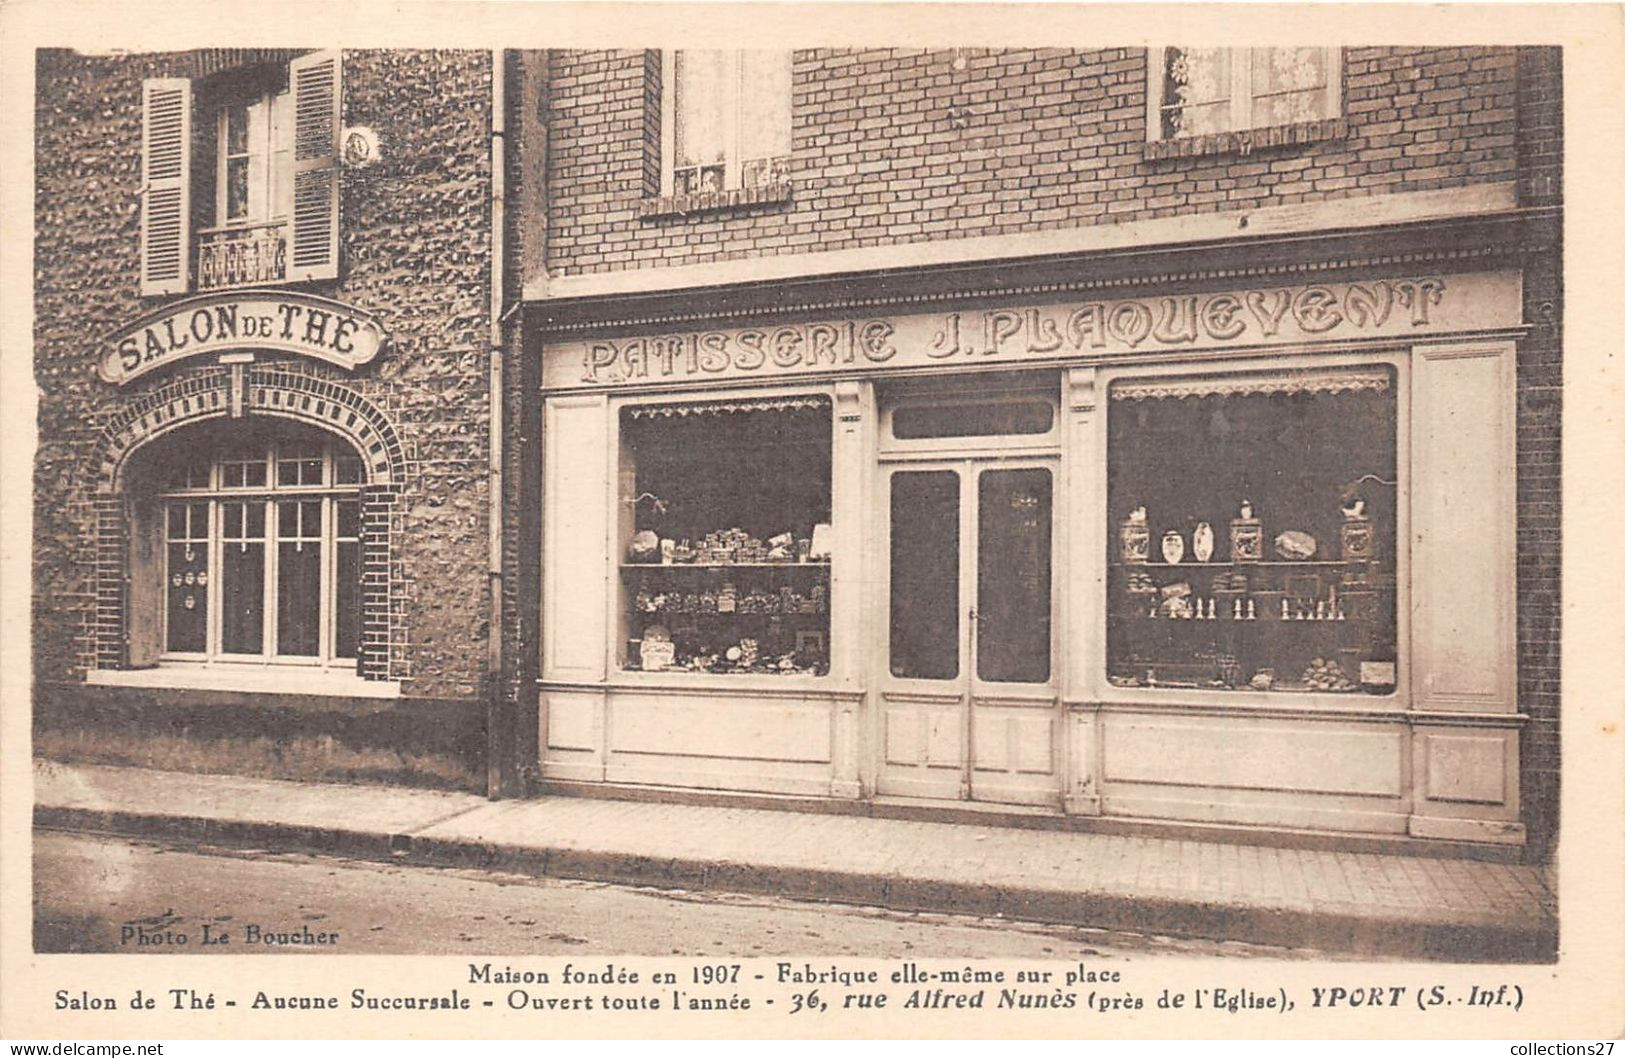 76-YPORT- PATISSERIE J. PLAQUEVENT SALON DE THE MAISON FONDEE EN 1907 36 RUE ALFRED NUNES ( PRES DE L'EGLISE - Yport